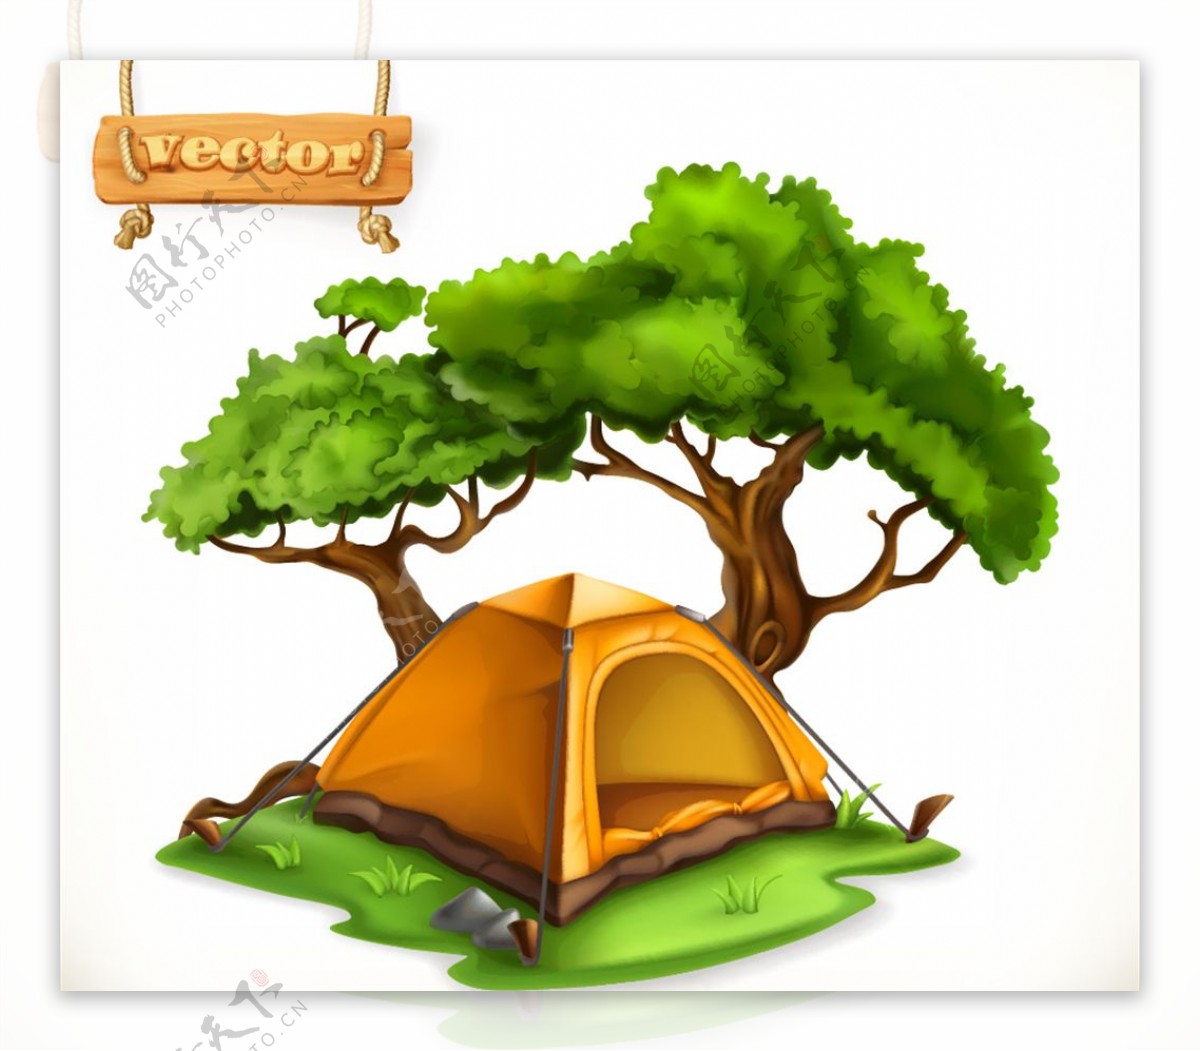 草地上的帐篷和大树矢量素材